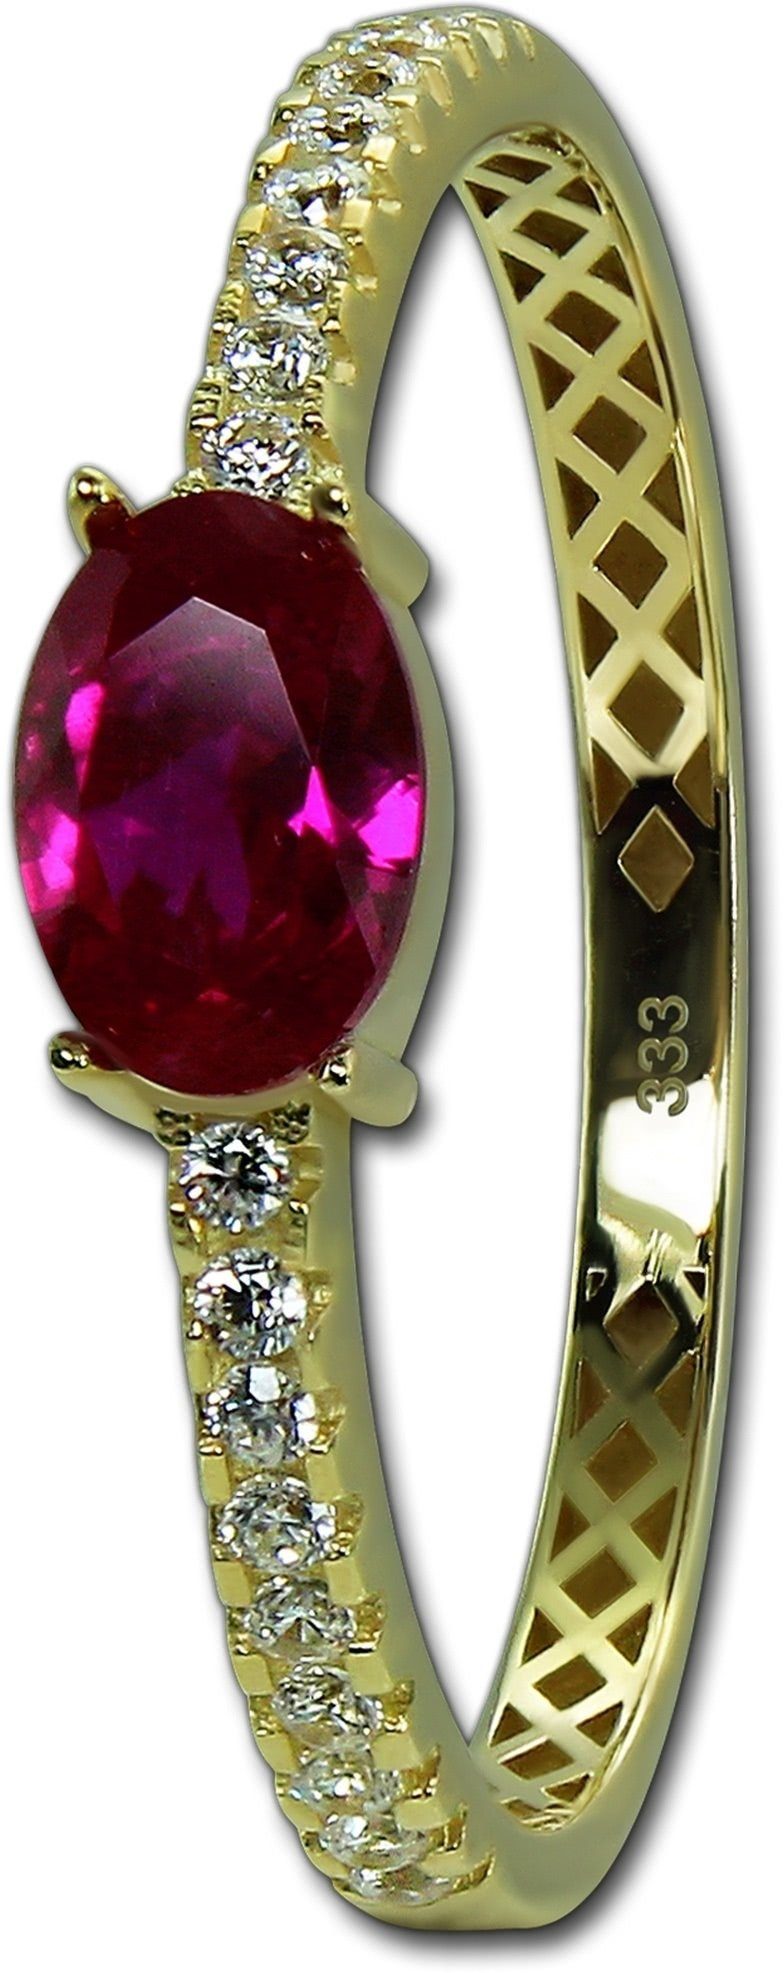 333er Ring Beauty Gold Gelbgold Beauty weiß, GoldDream Goldring (Fingerring), Damen Ring gold, Gr.58 Echtgold, pink GoldDream